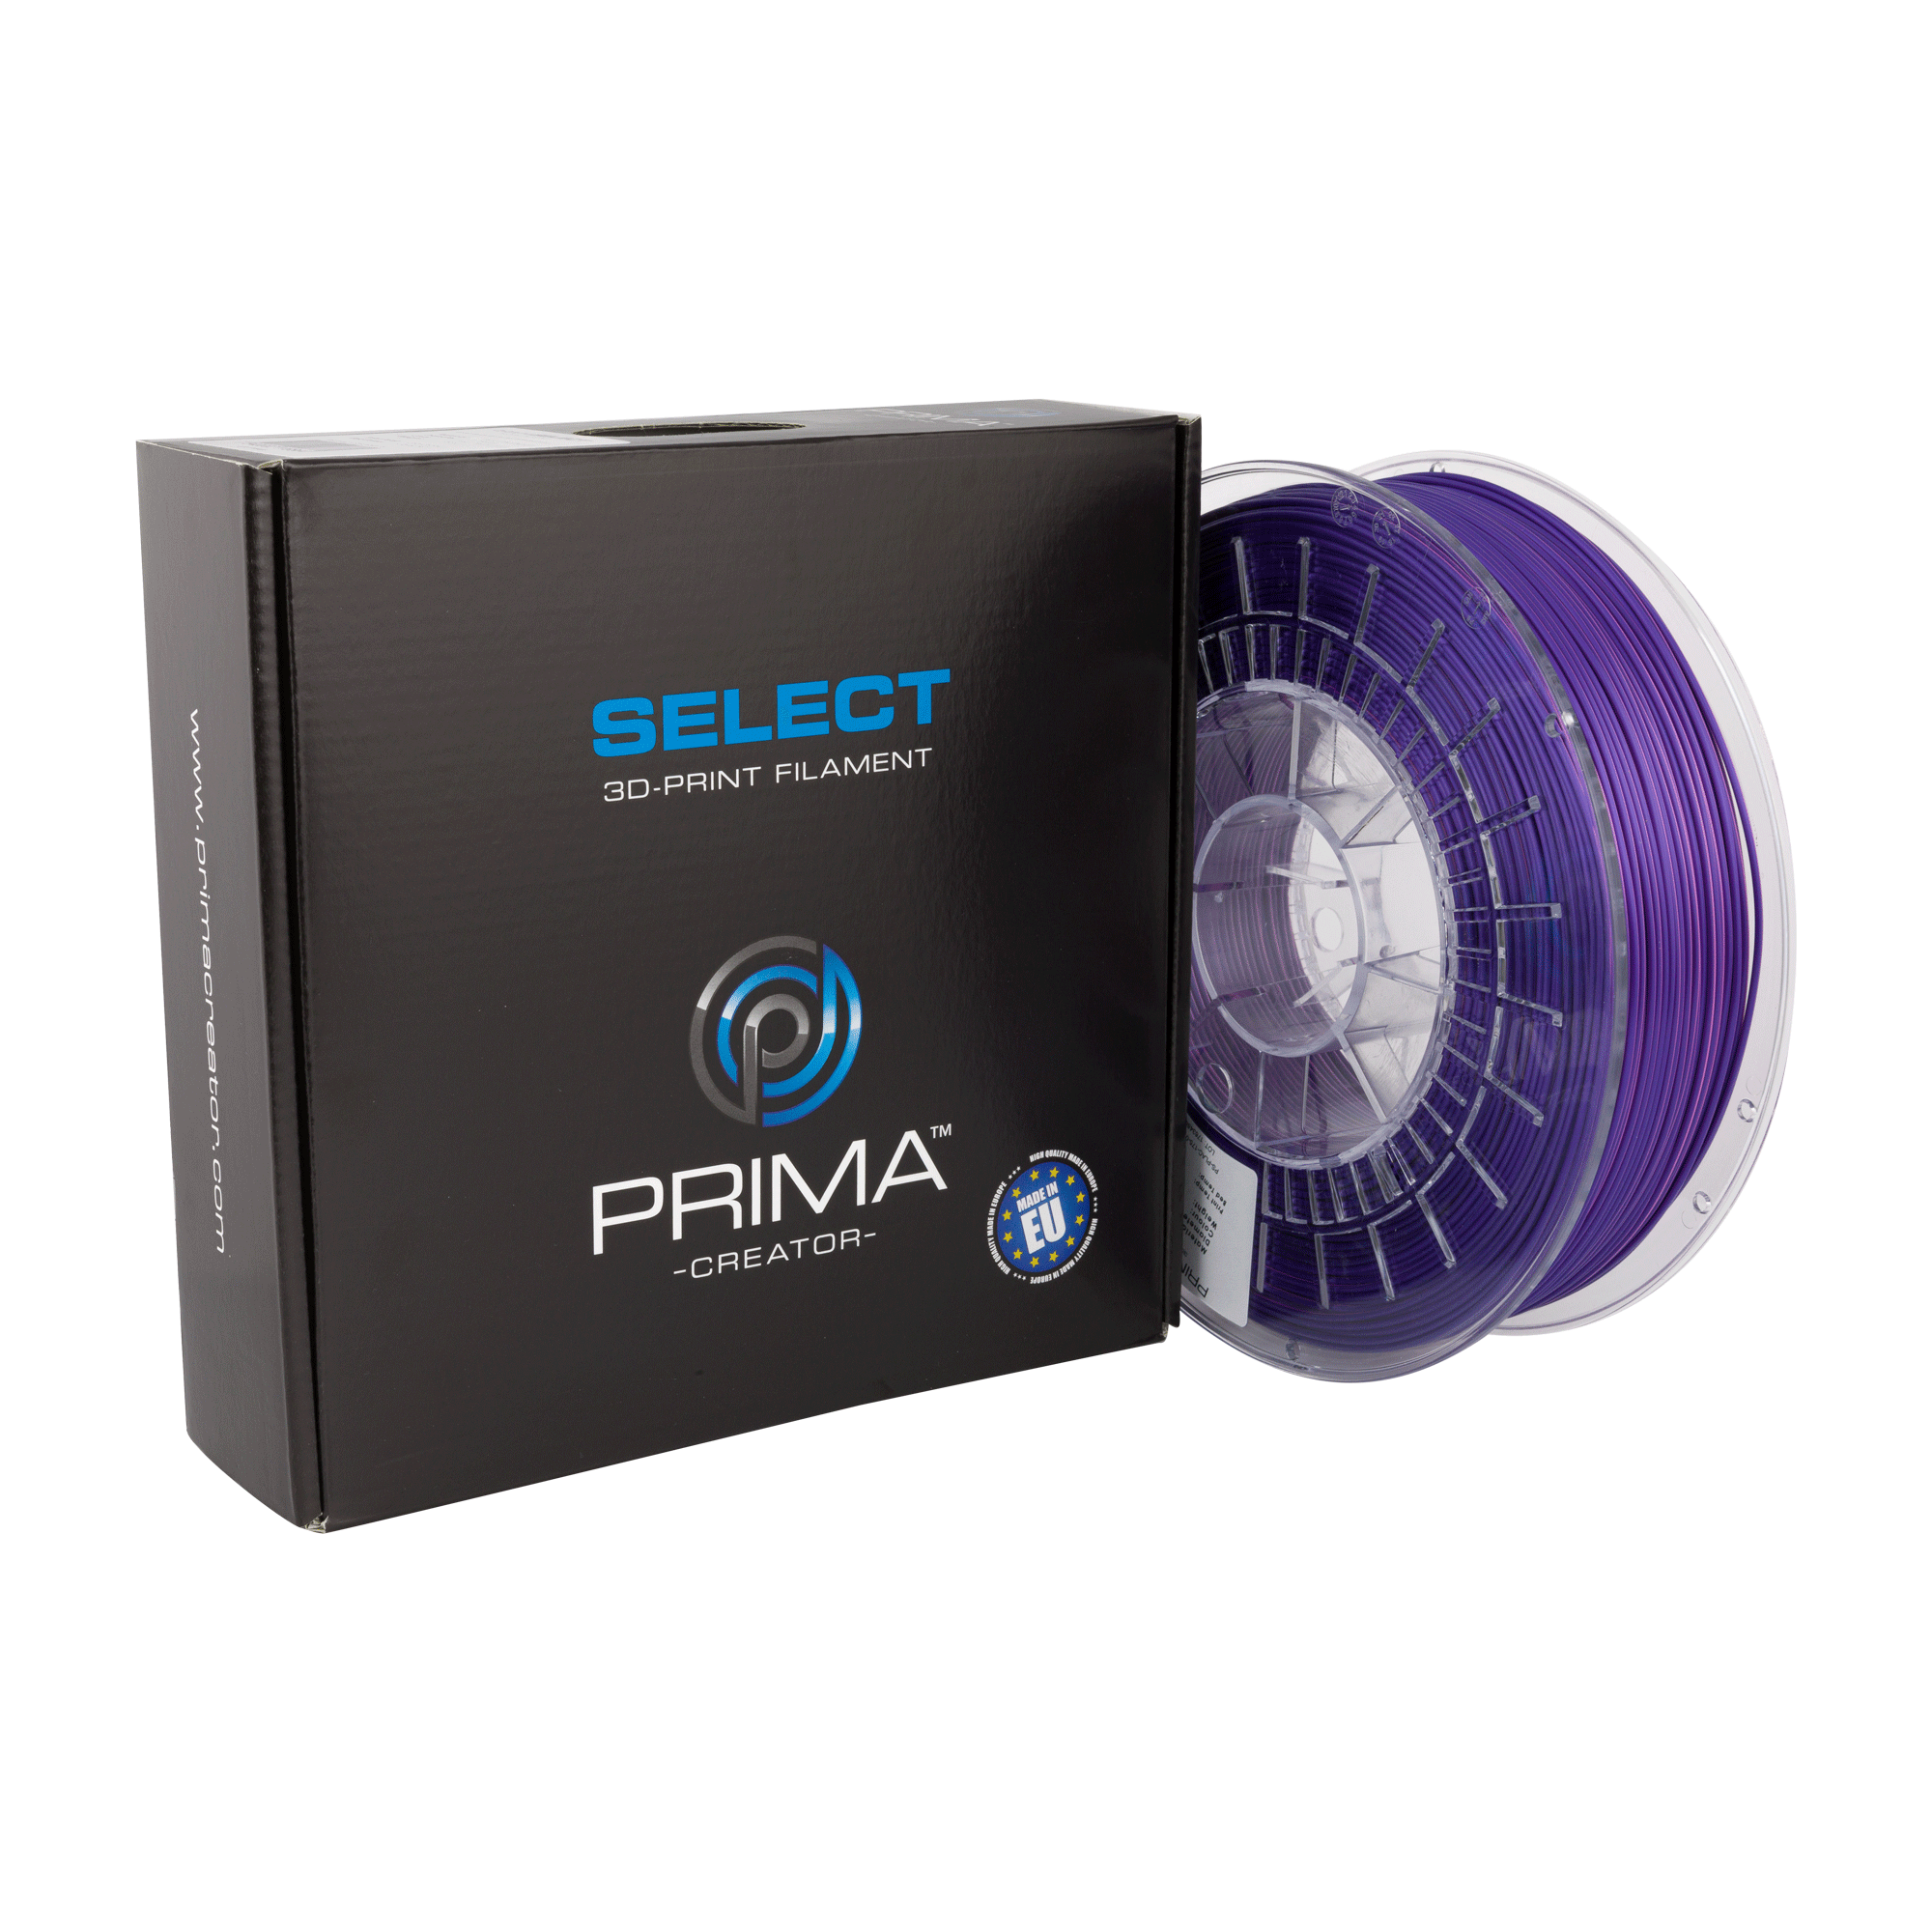 PS-PLAC-175-0750-PP, Prima Filament pour imprimante 3D, PLA, 1.75mm, Rose  / violet, 750g